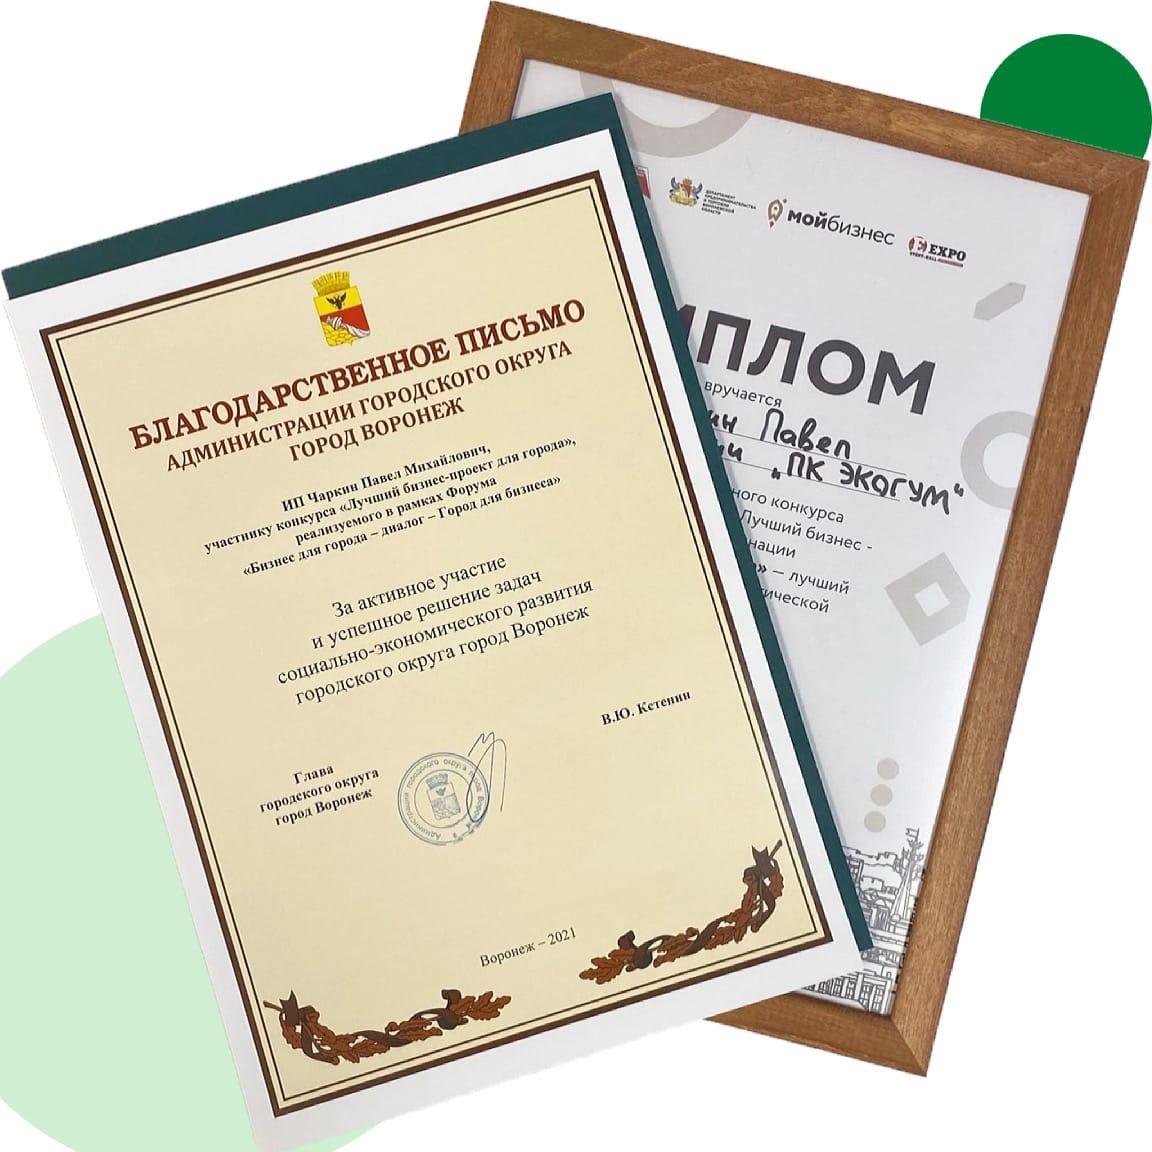 Дипломы победителей в номинации "Экологичное производство"